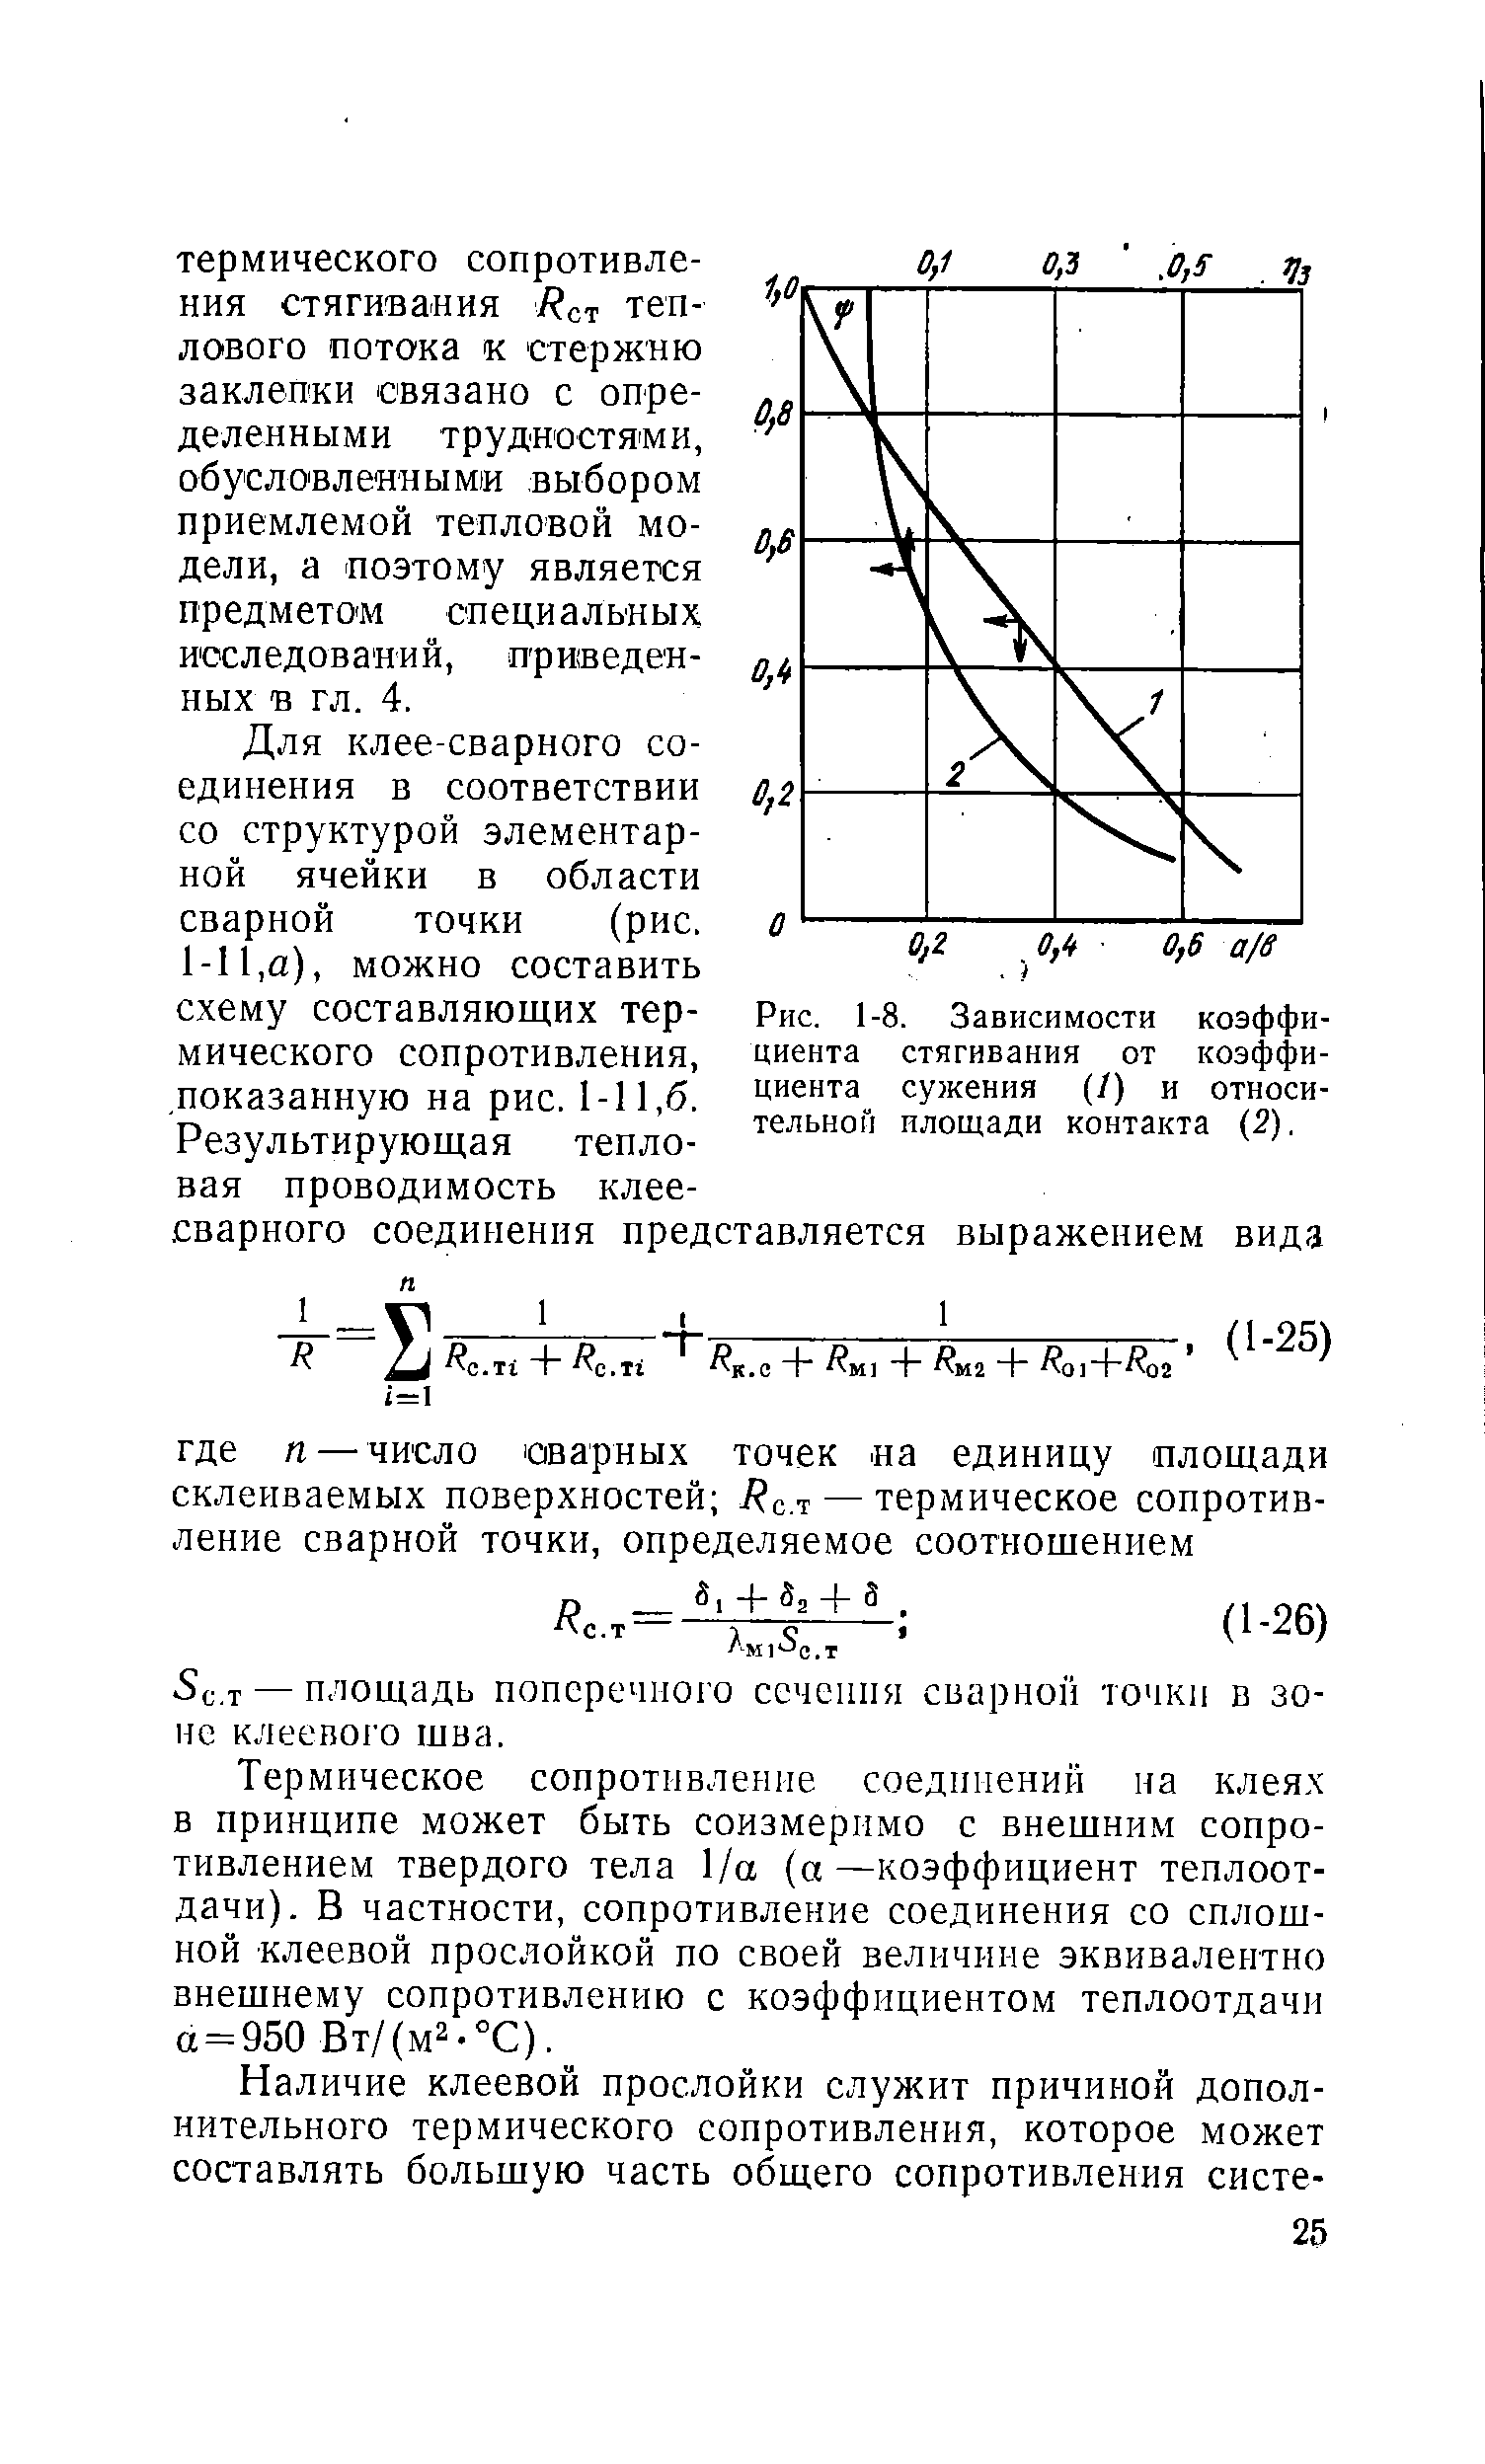 Рис. 1-8. Зависимости коэффициента стягивания от коэффициента сужения (/) и относительной площади контакта (2).
